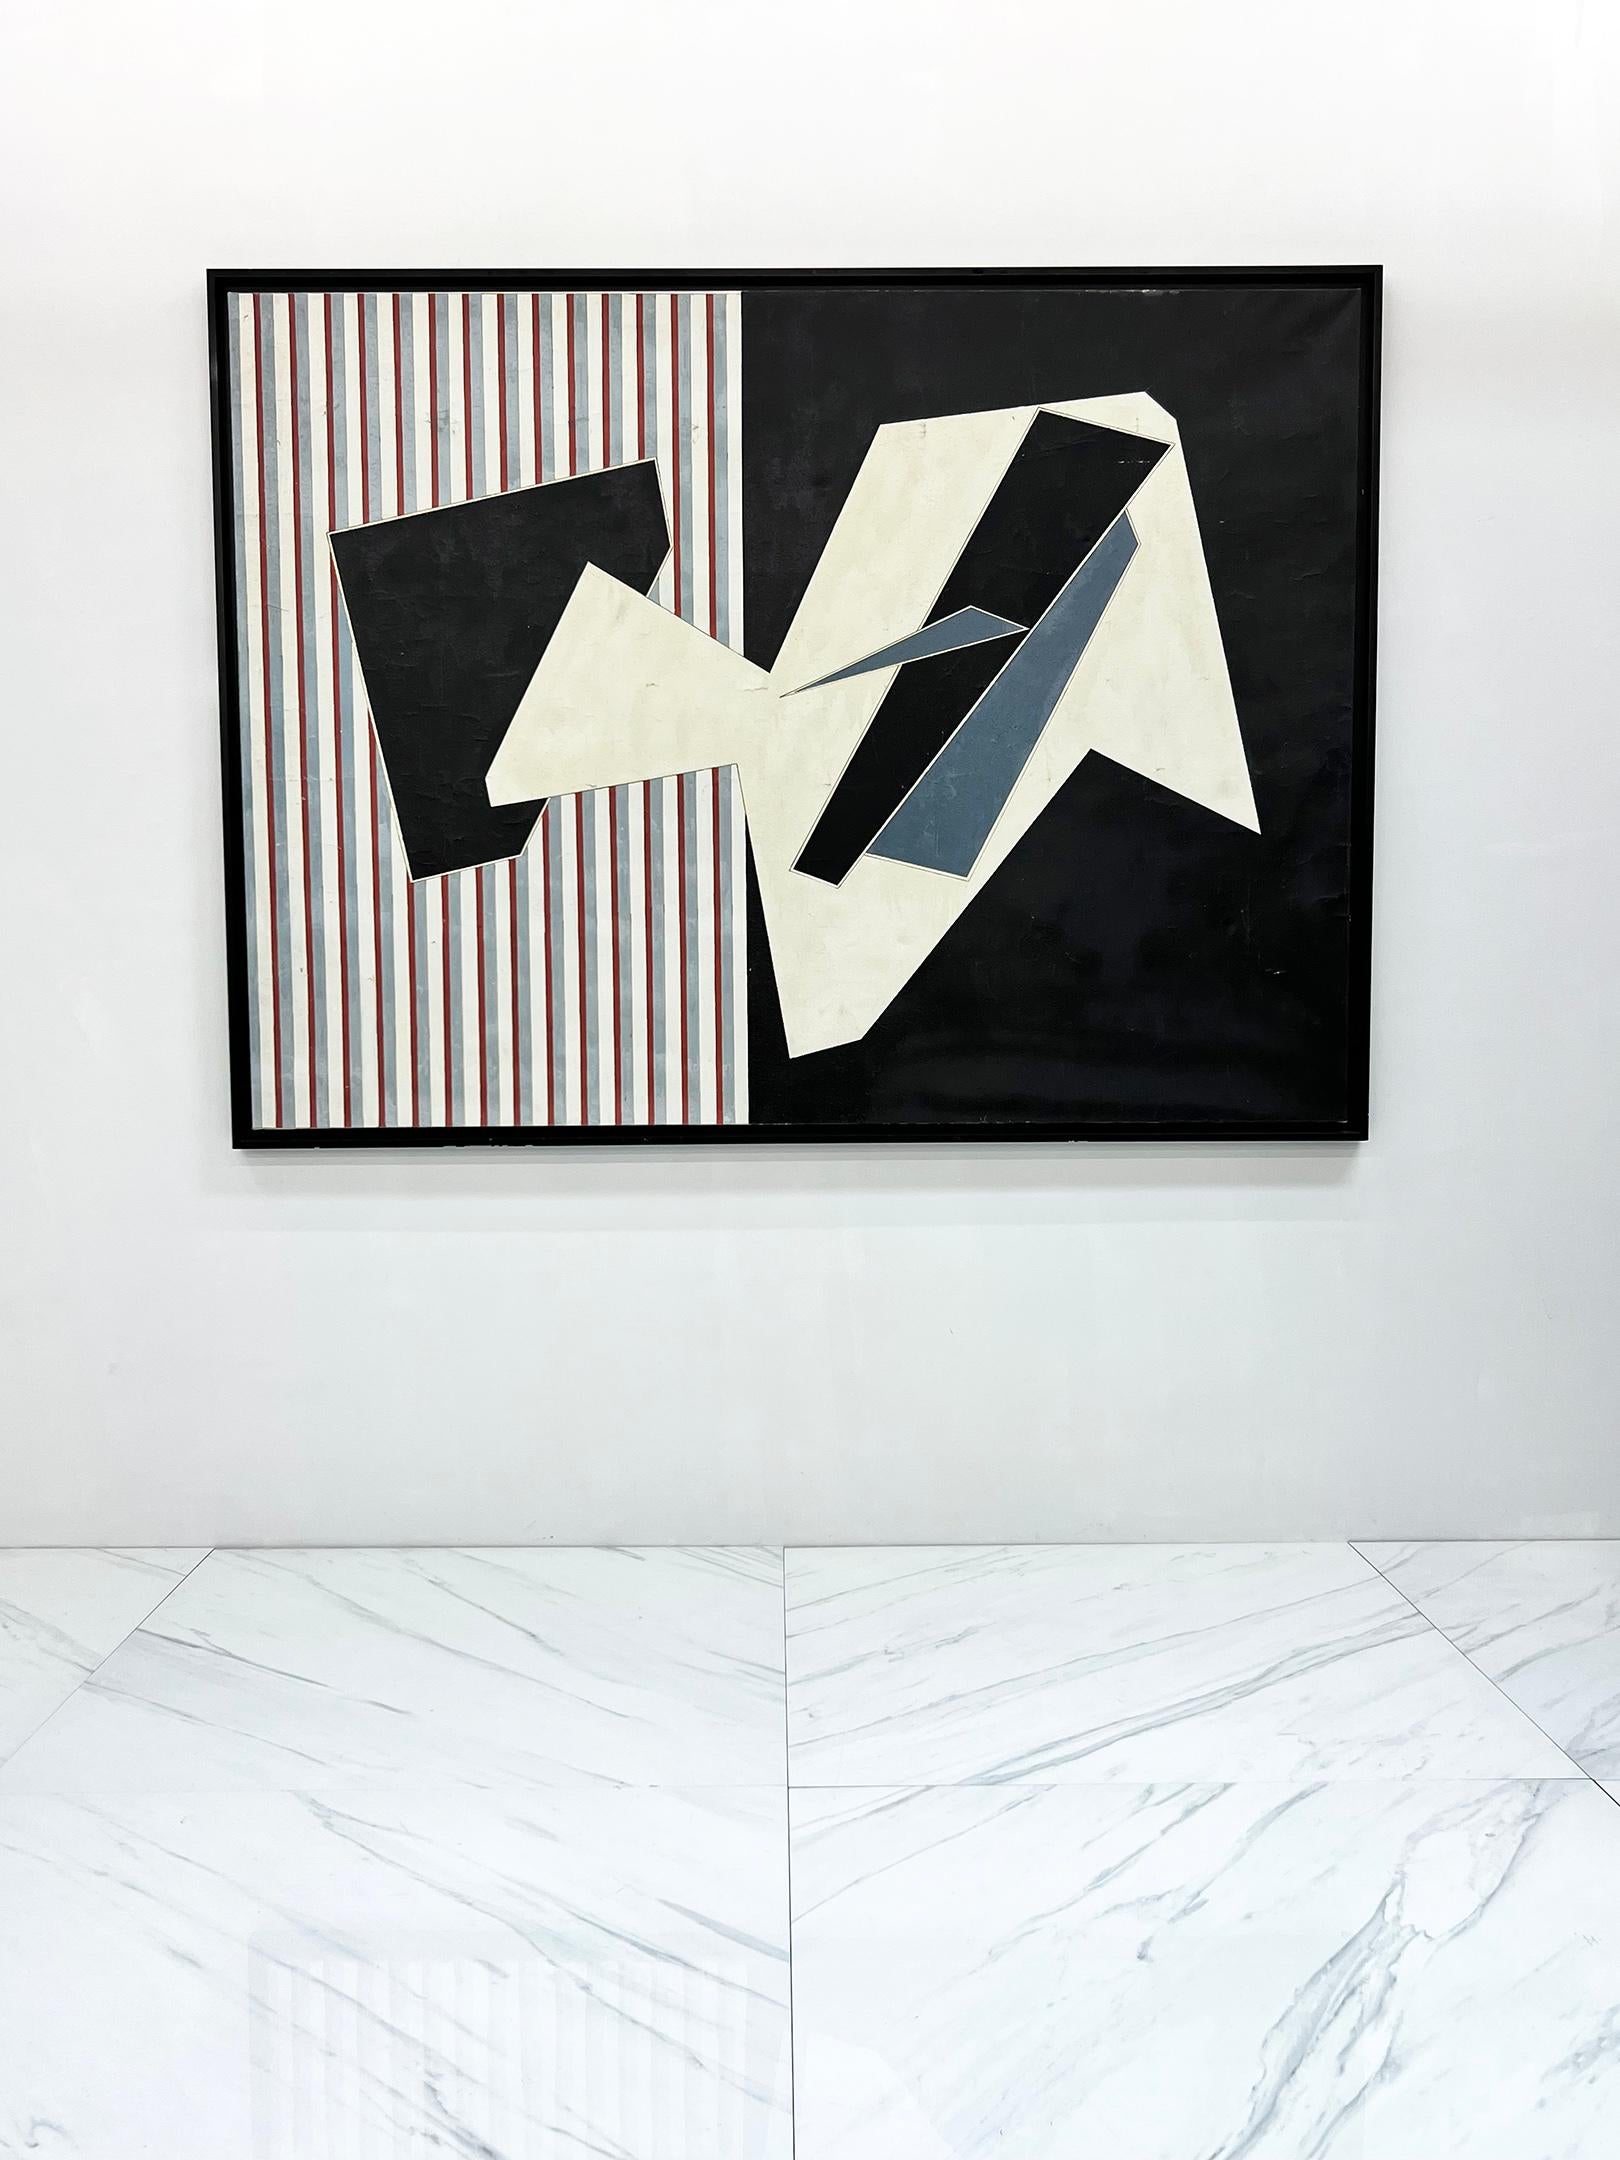 Alain Le Yaouanc (1931-2012) est un peintre et graveur français associé au mouvement abstrait du milieu du XXe siècle. Il était connu pour son utilisation de couleurs vives et de formes géométriques, et ses œuvres incorporaient souvent des éléments